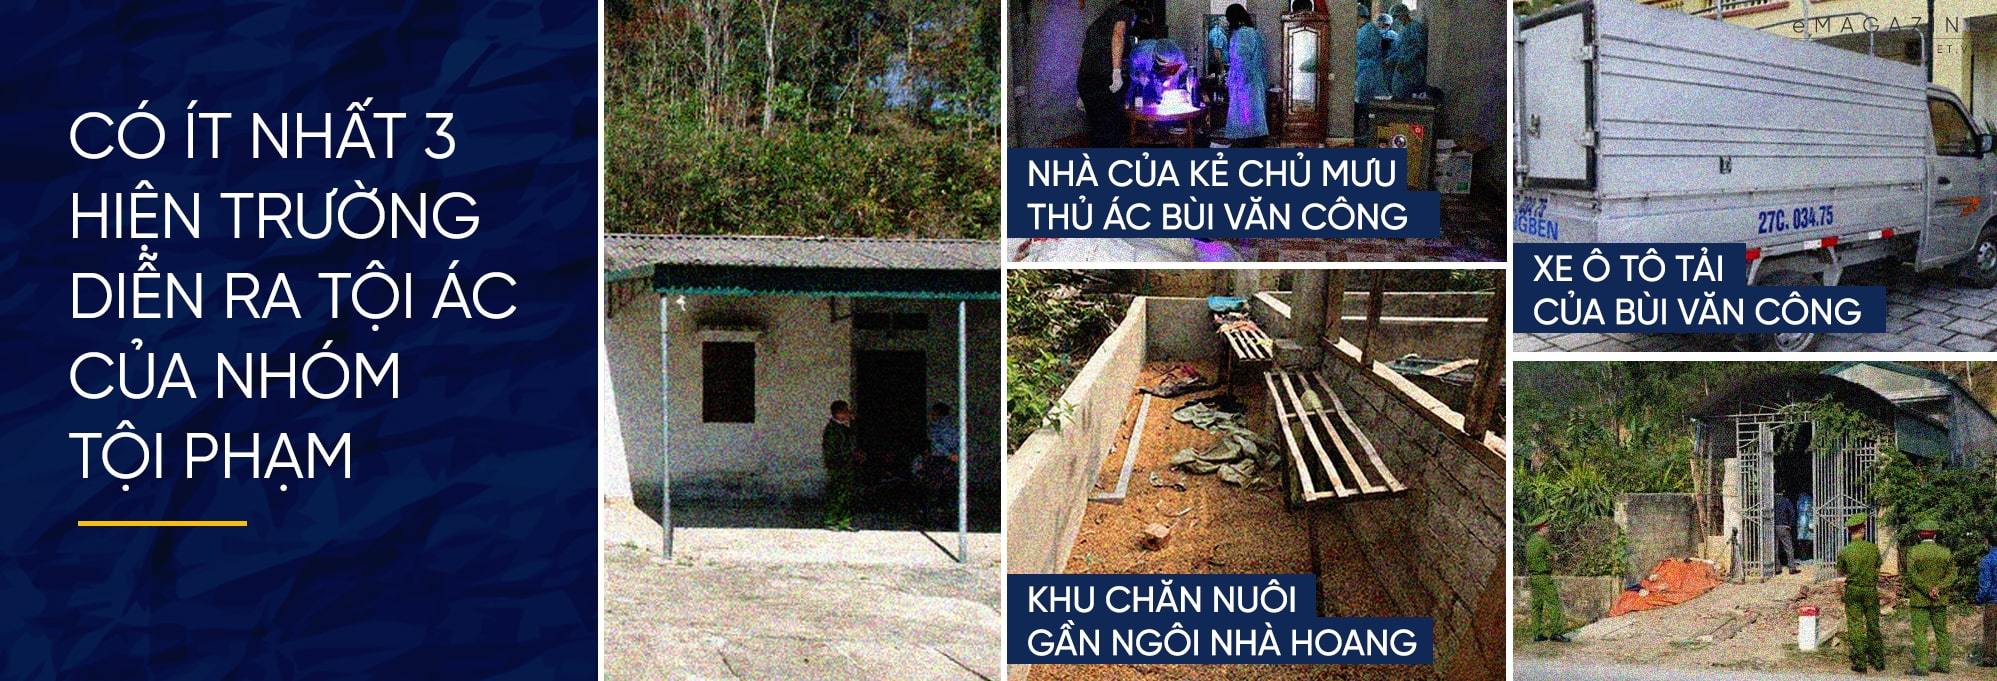 Nữ sinh bị sát hại ở Điện Biên: 9 kẻ thủ ác tráo trở tàn nhẫn-7